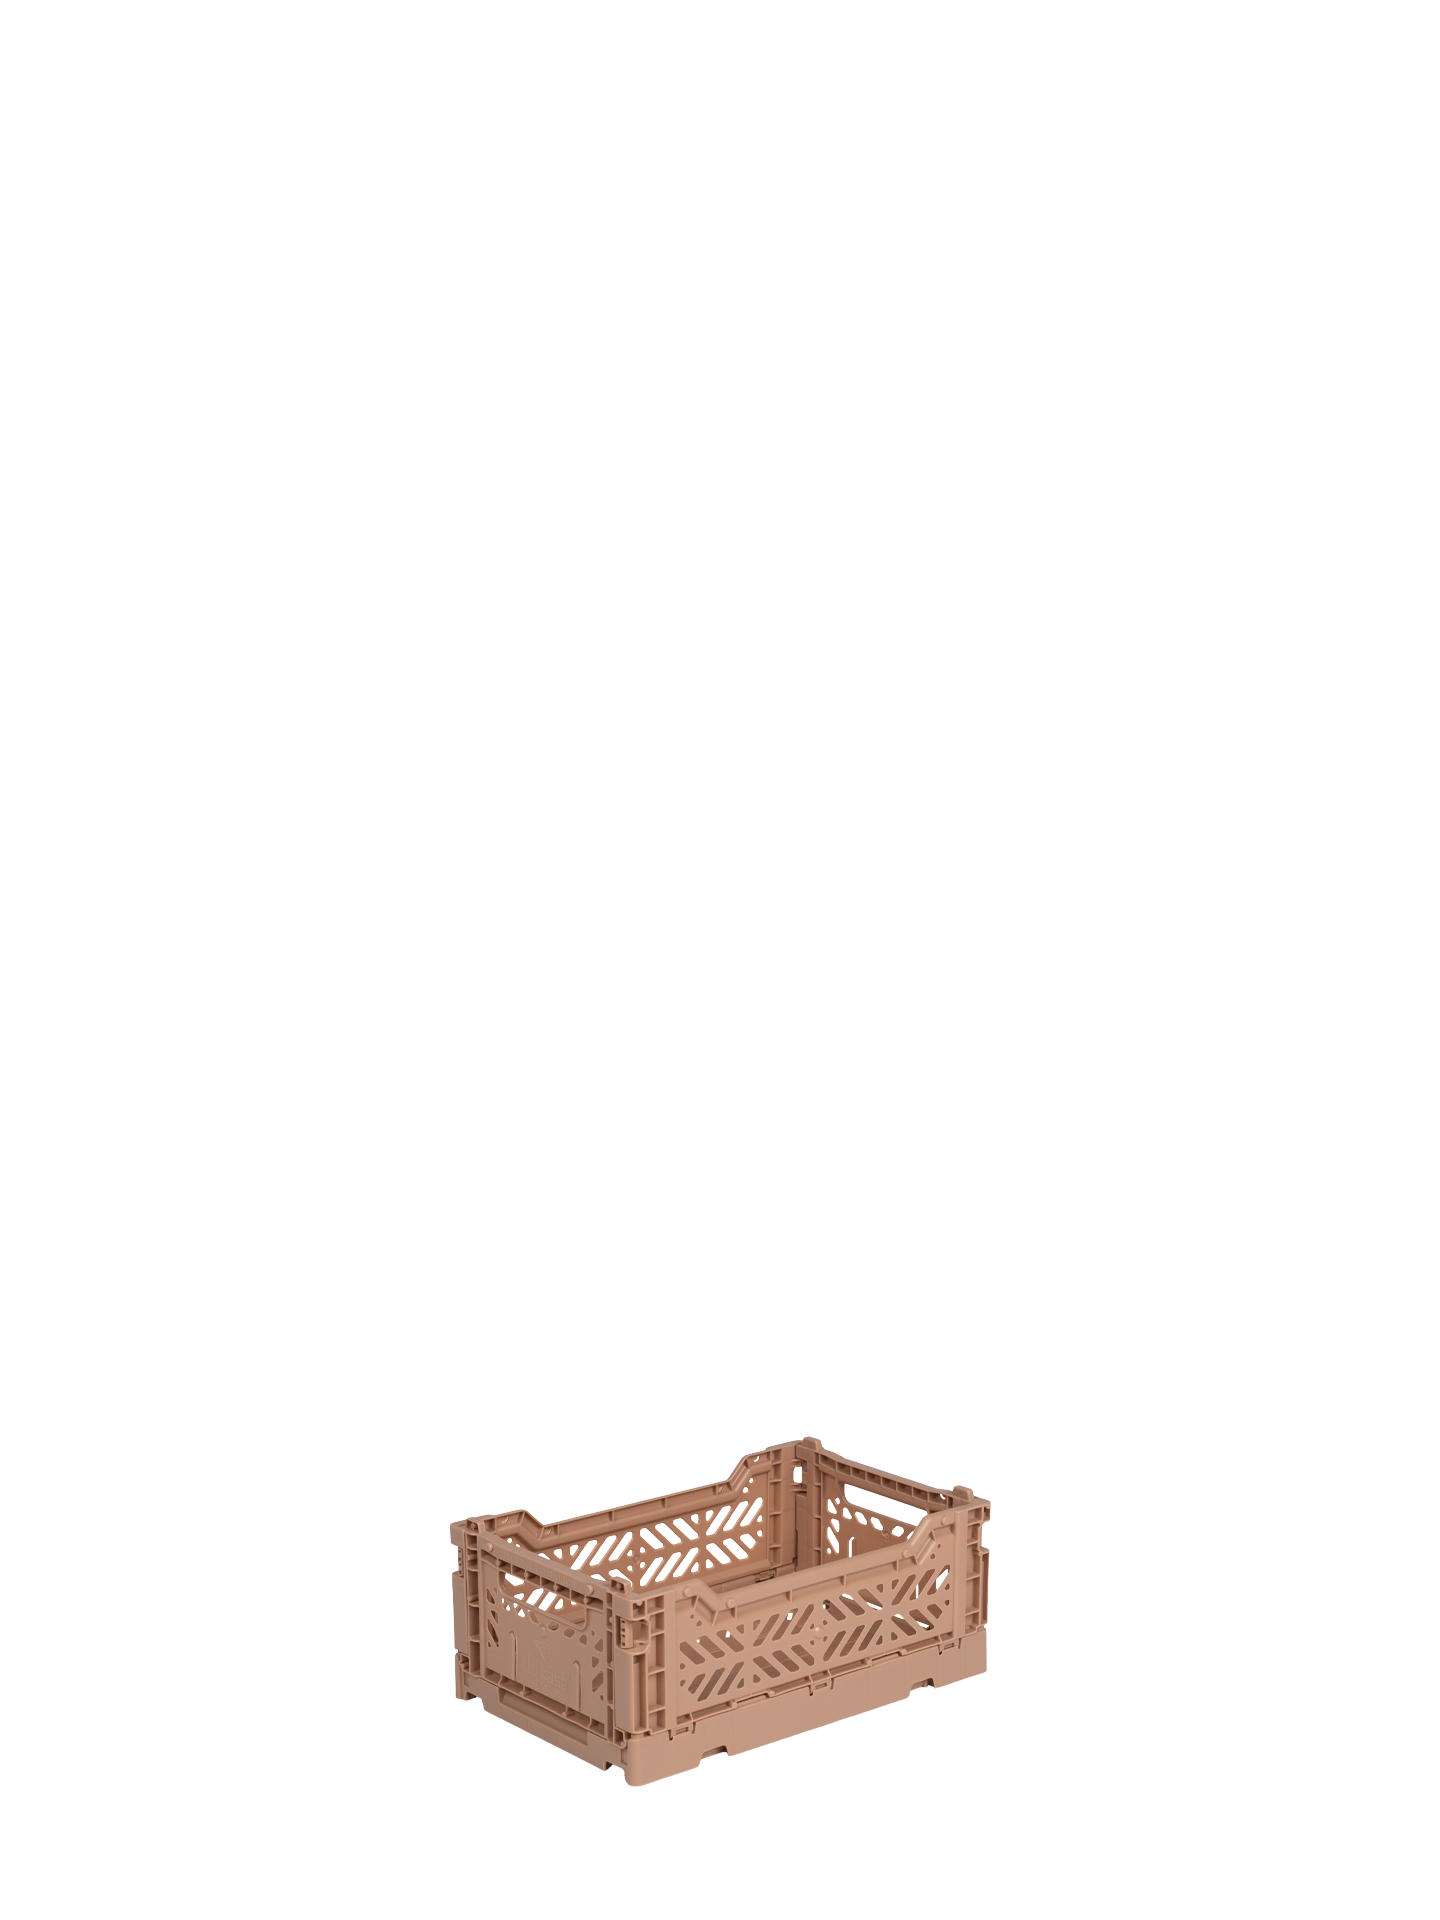 Mini Aykasa crate in warm tan brown stacks and folds